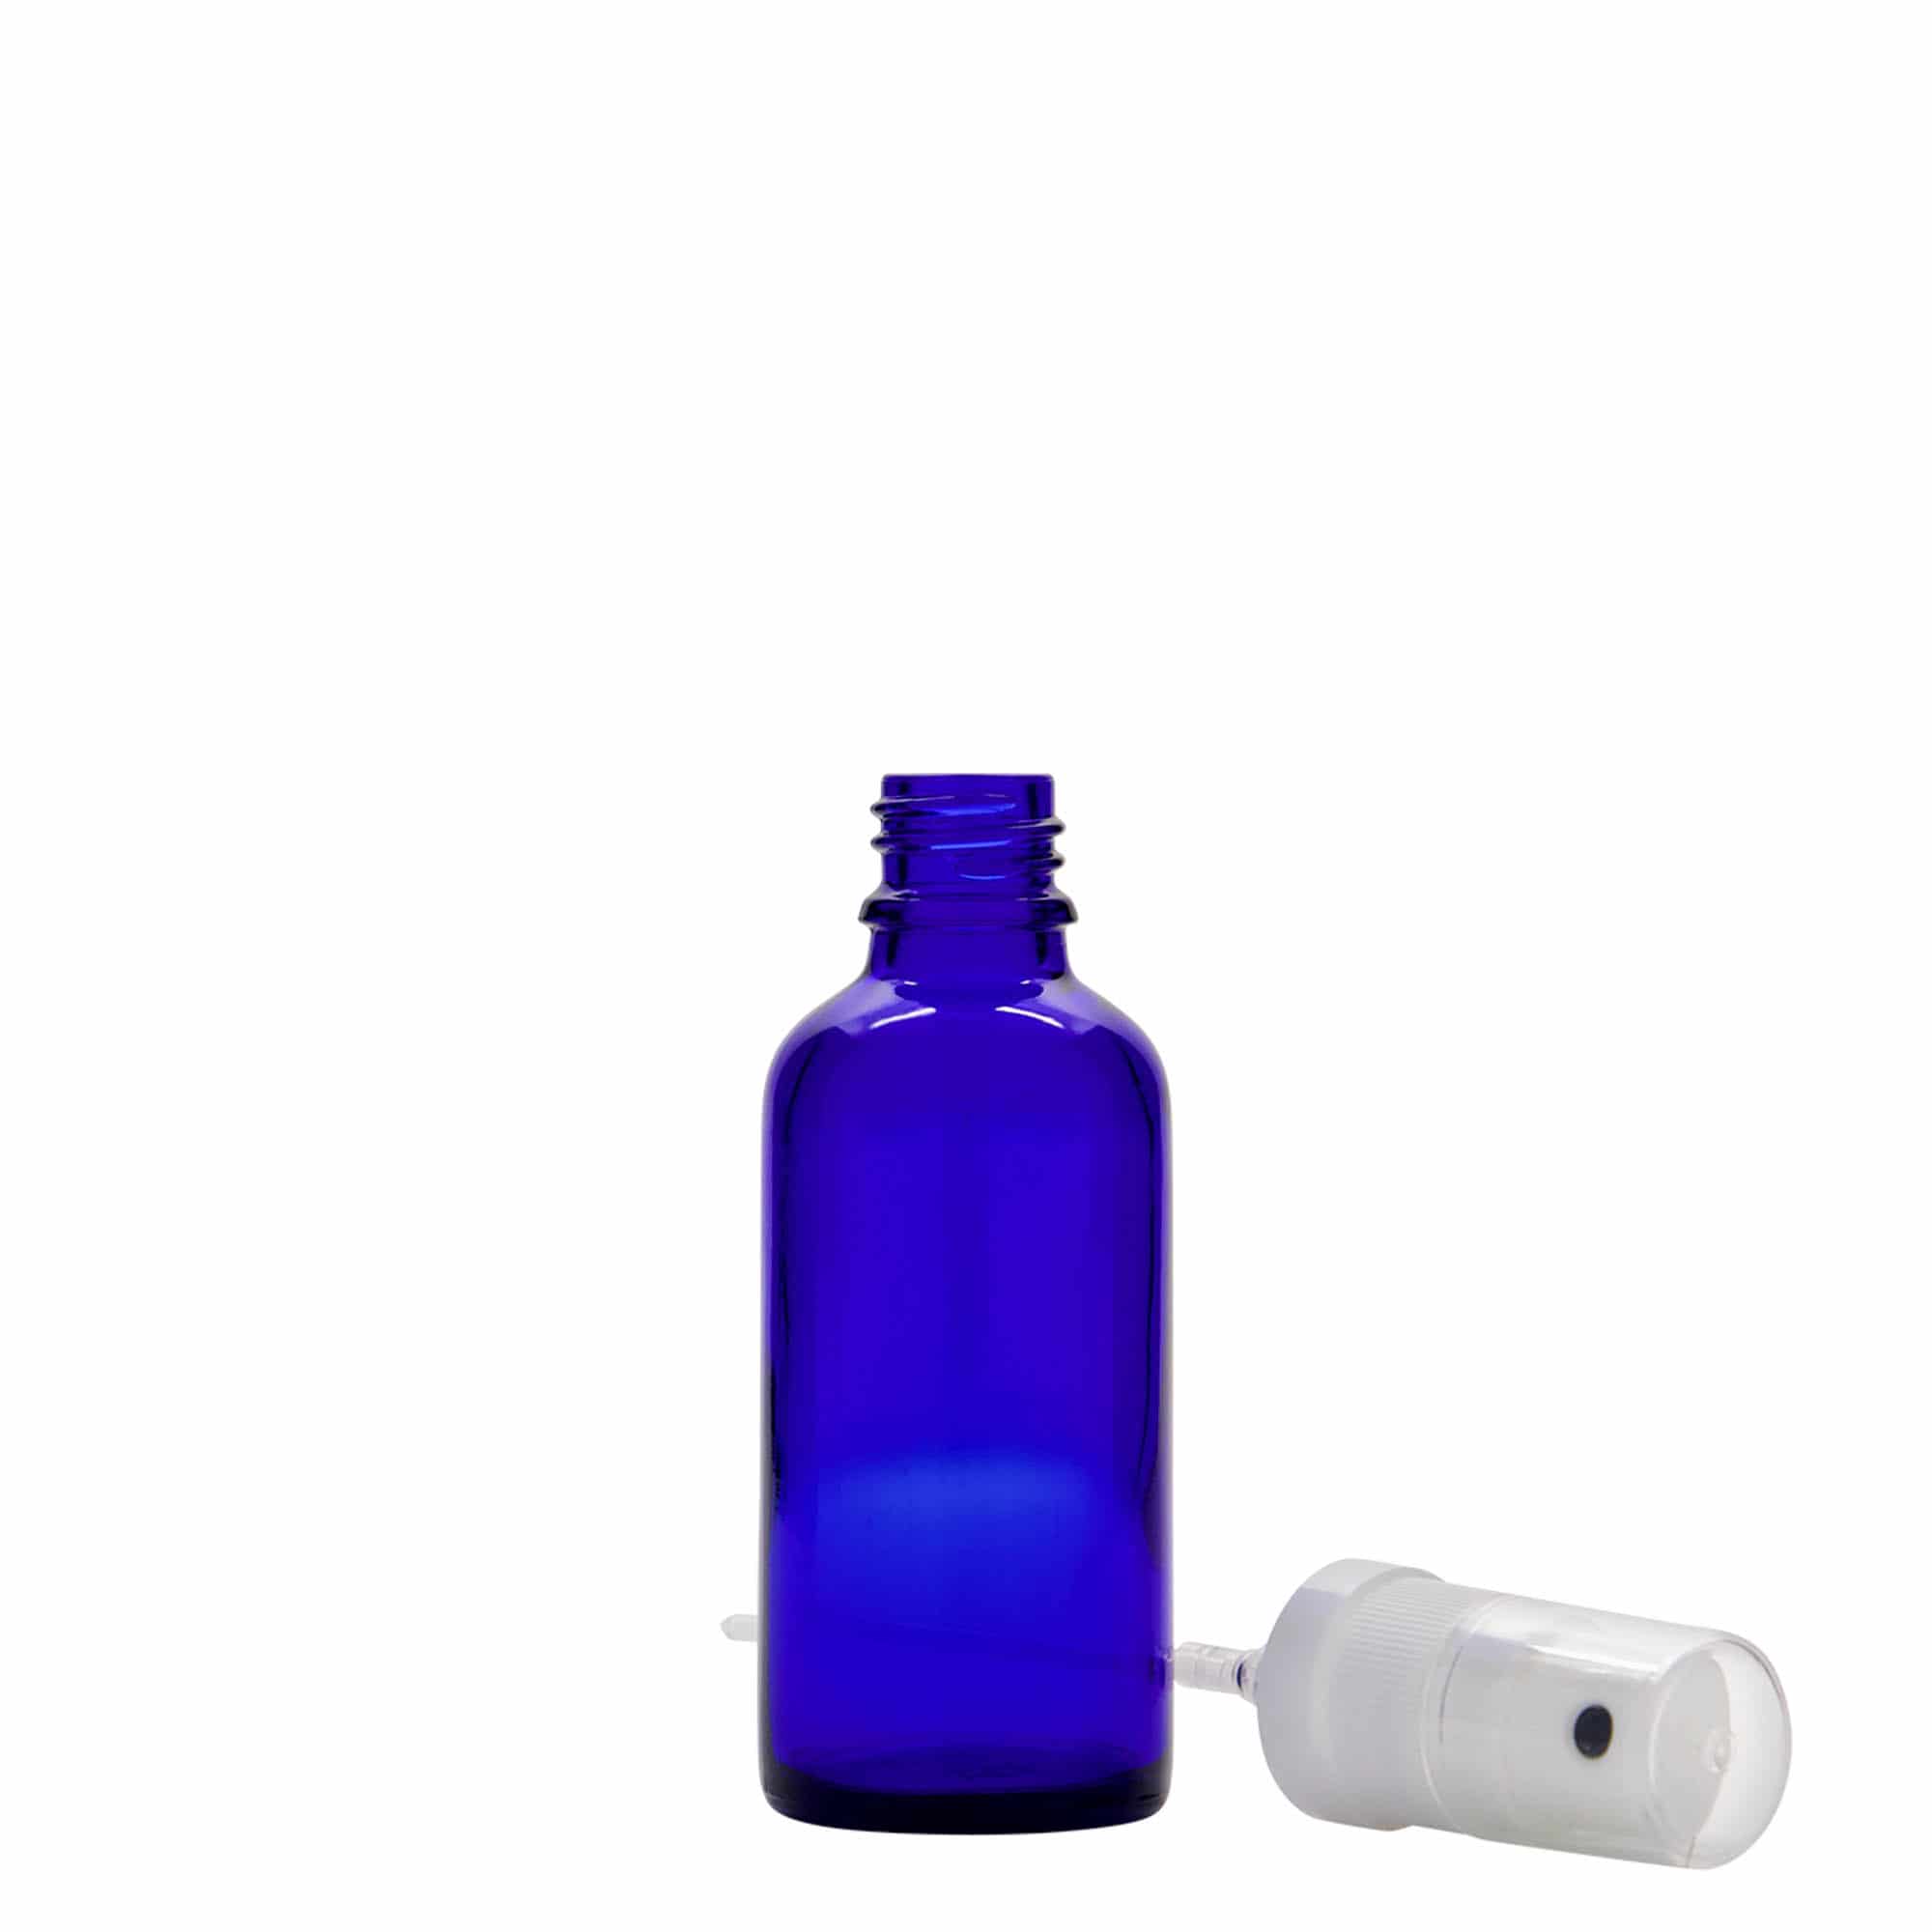 50 ml spray-pullo lääke, lasi, laivastonsininen, suu: DIN 18